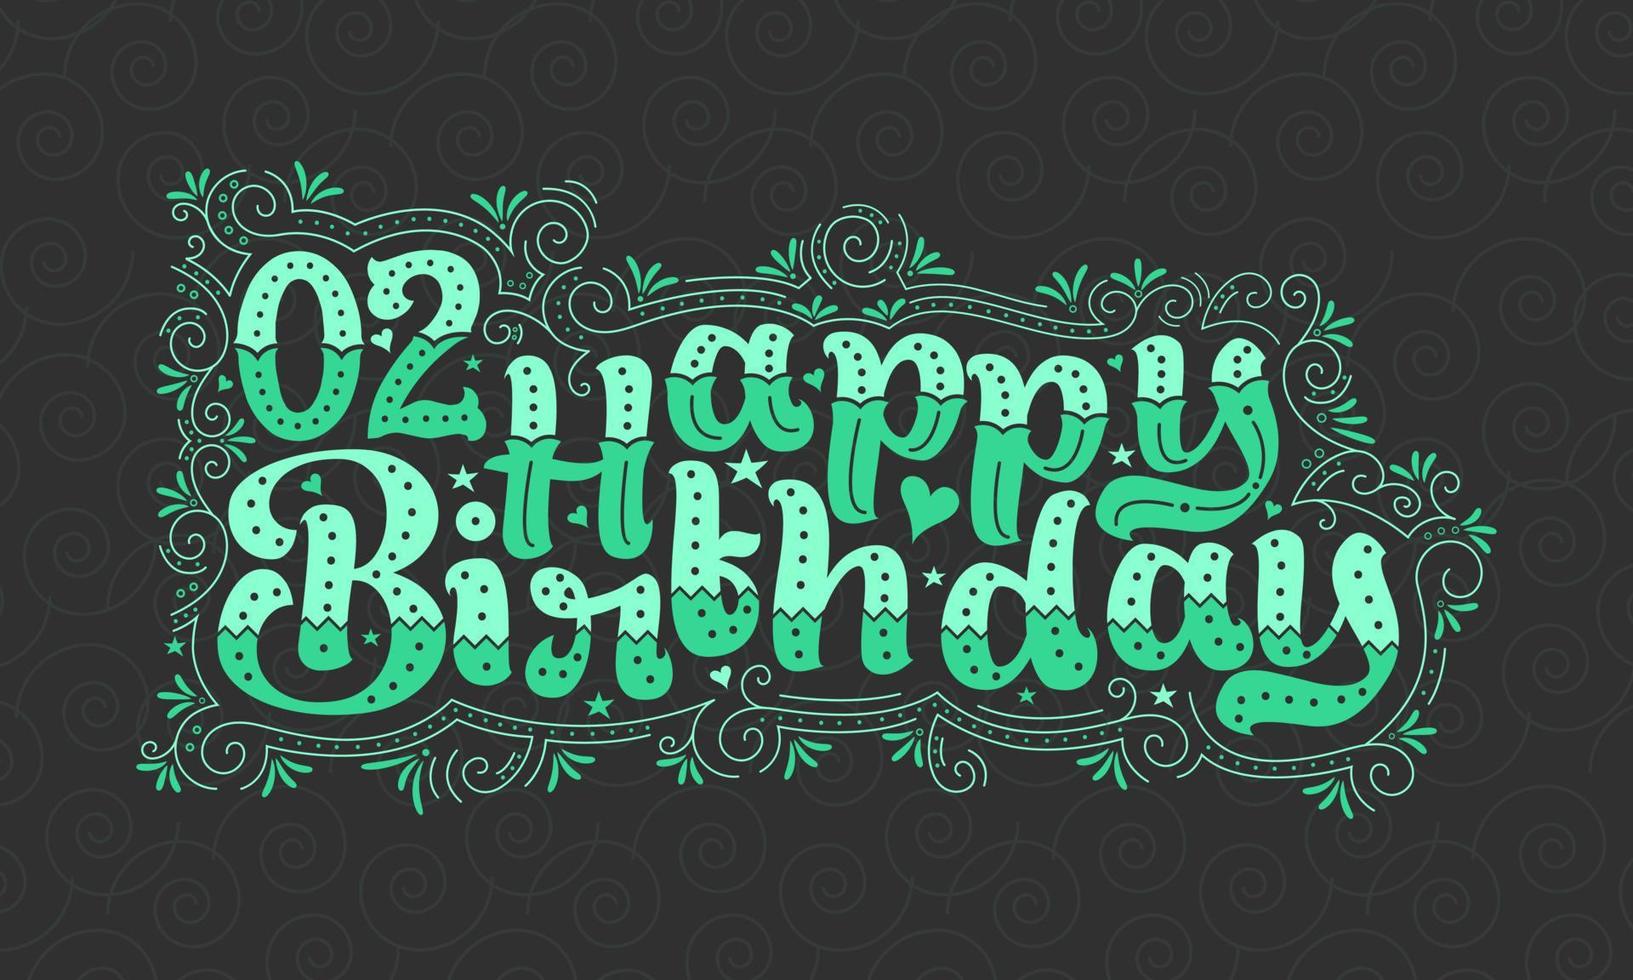 2a scritta di buon compleanno, bellissimo design tipografico di 2 anni con punti verdi, linee e foglie. vettore